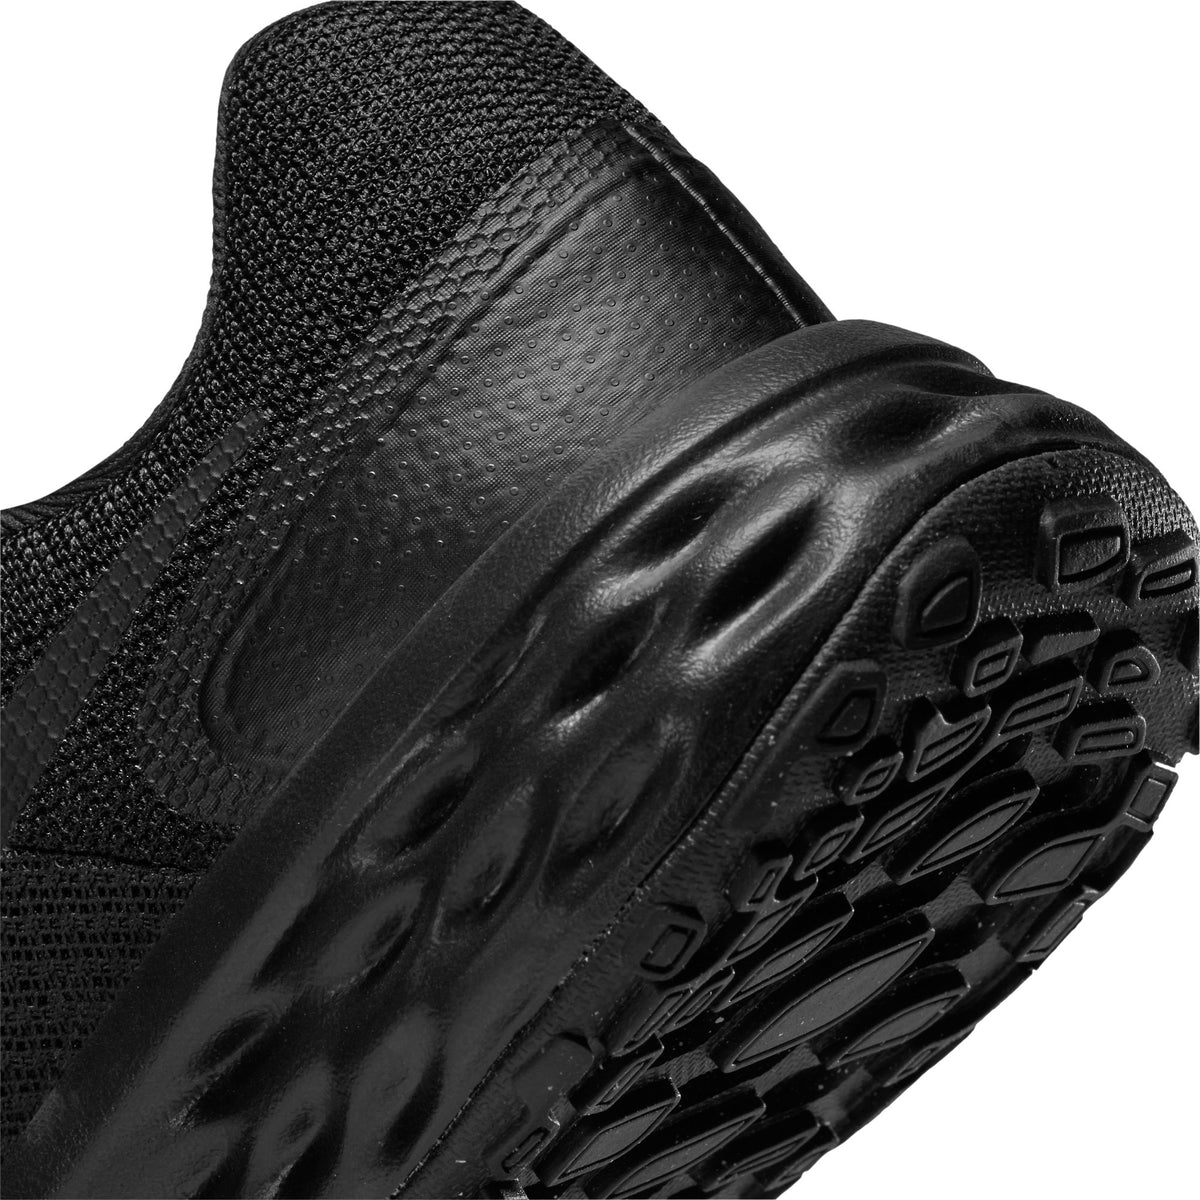 Zapatilla Nike Revolution de Niños color negro